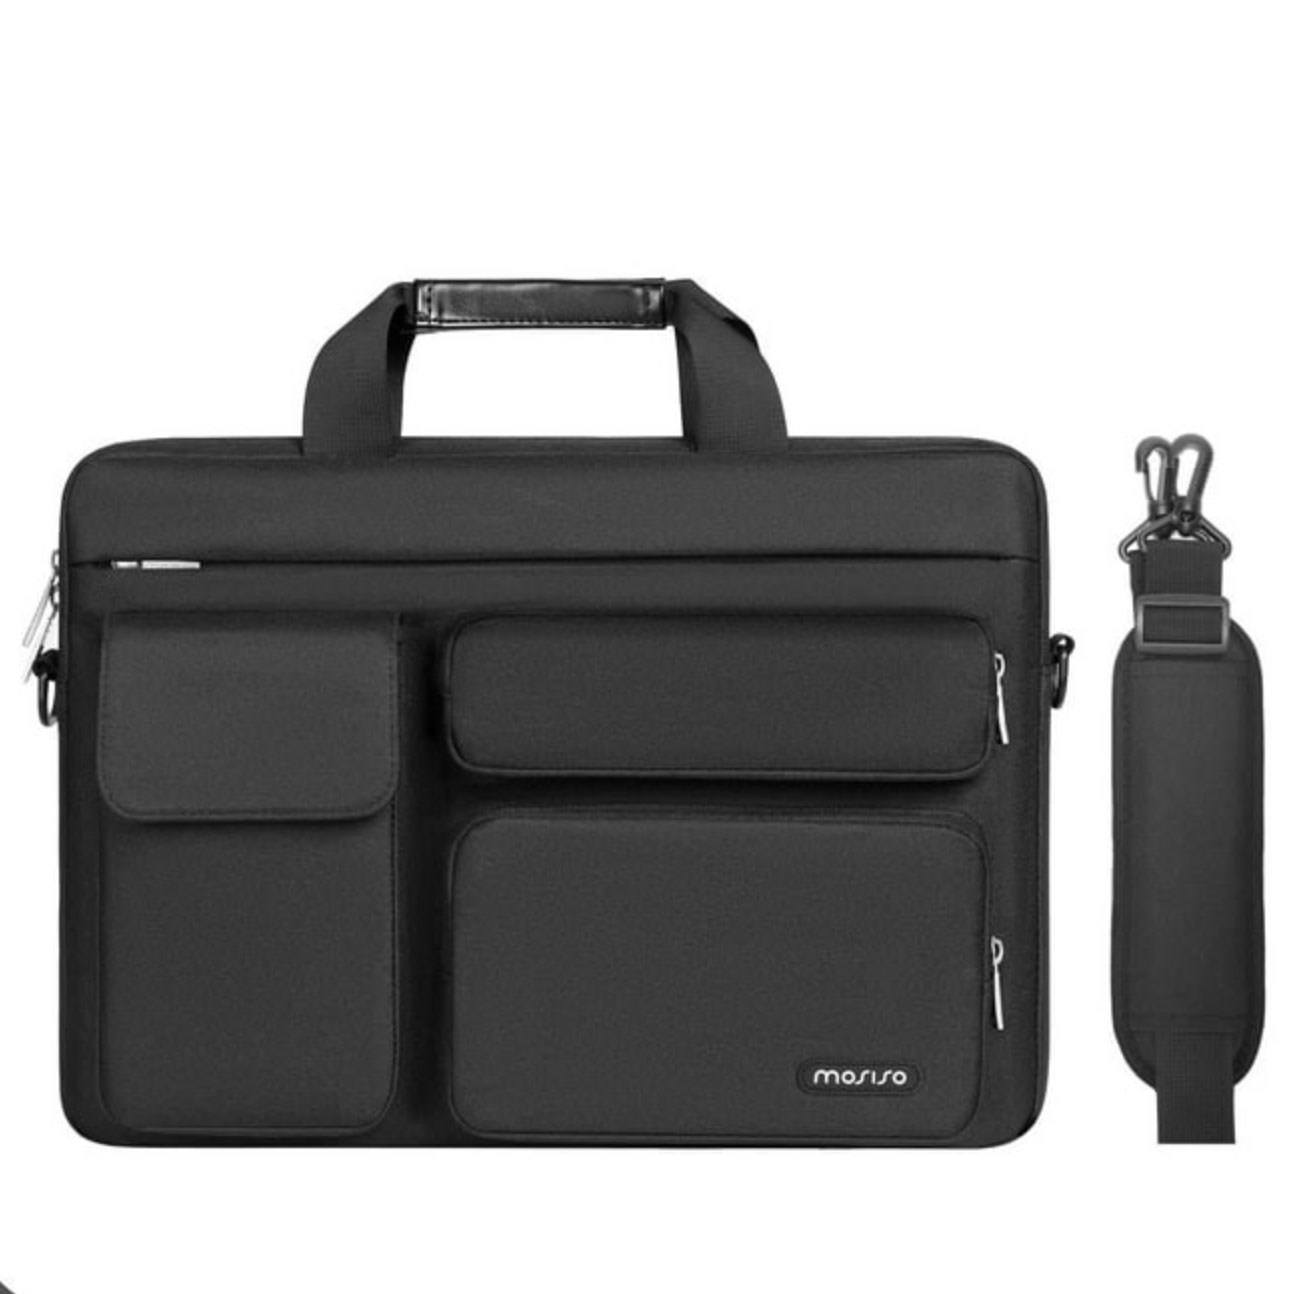 Mosiso 15 16-inch Laptop Shoulder Bag